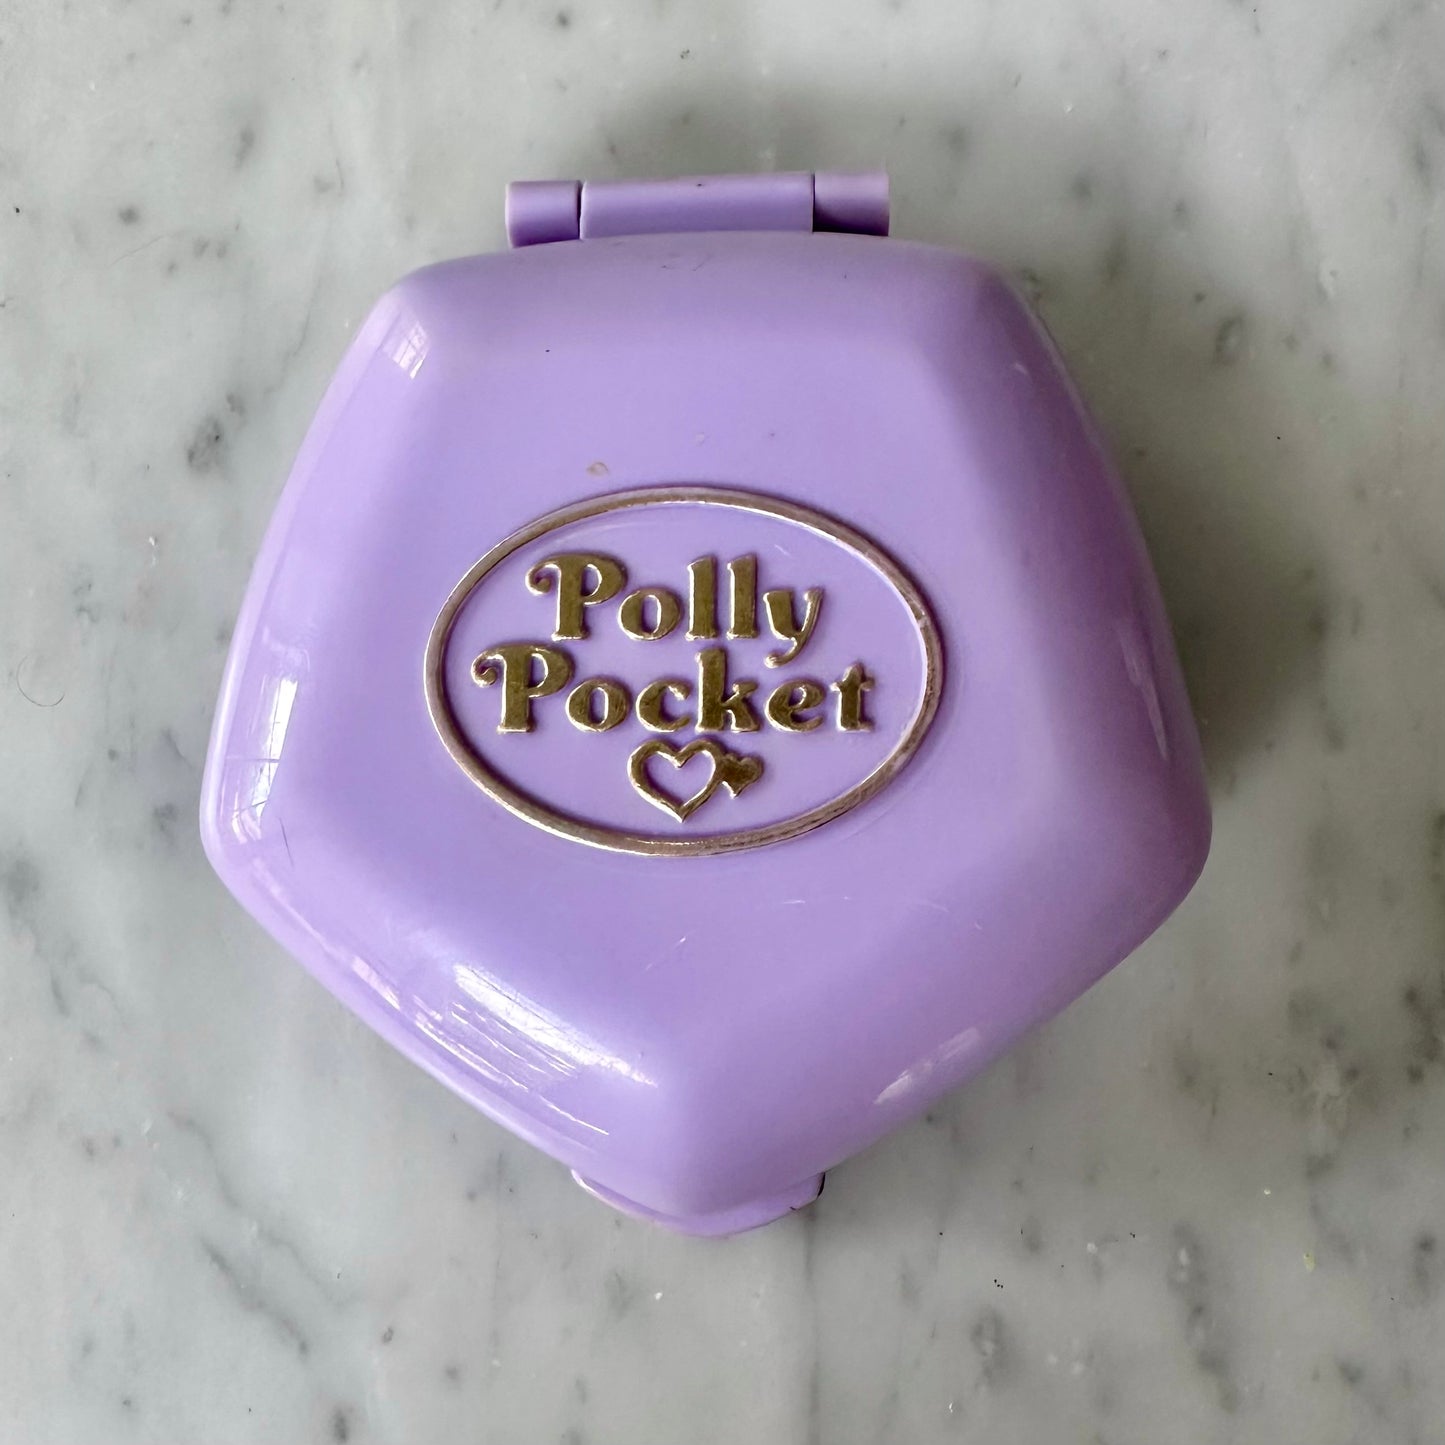 1994 Polly Pocket Slumber Party Fun